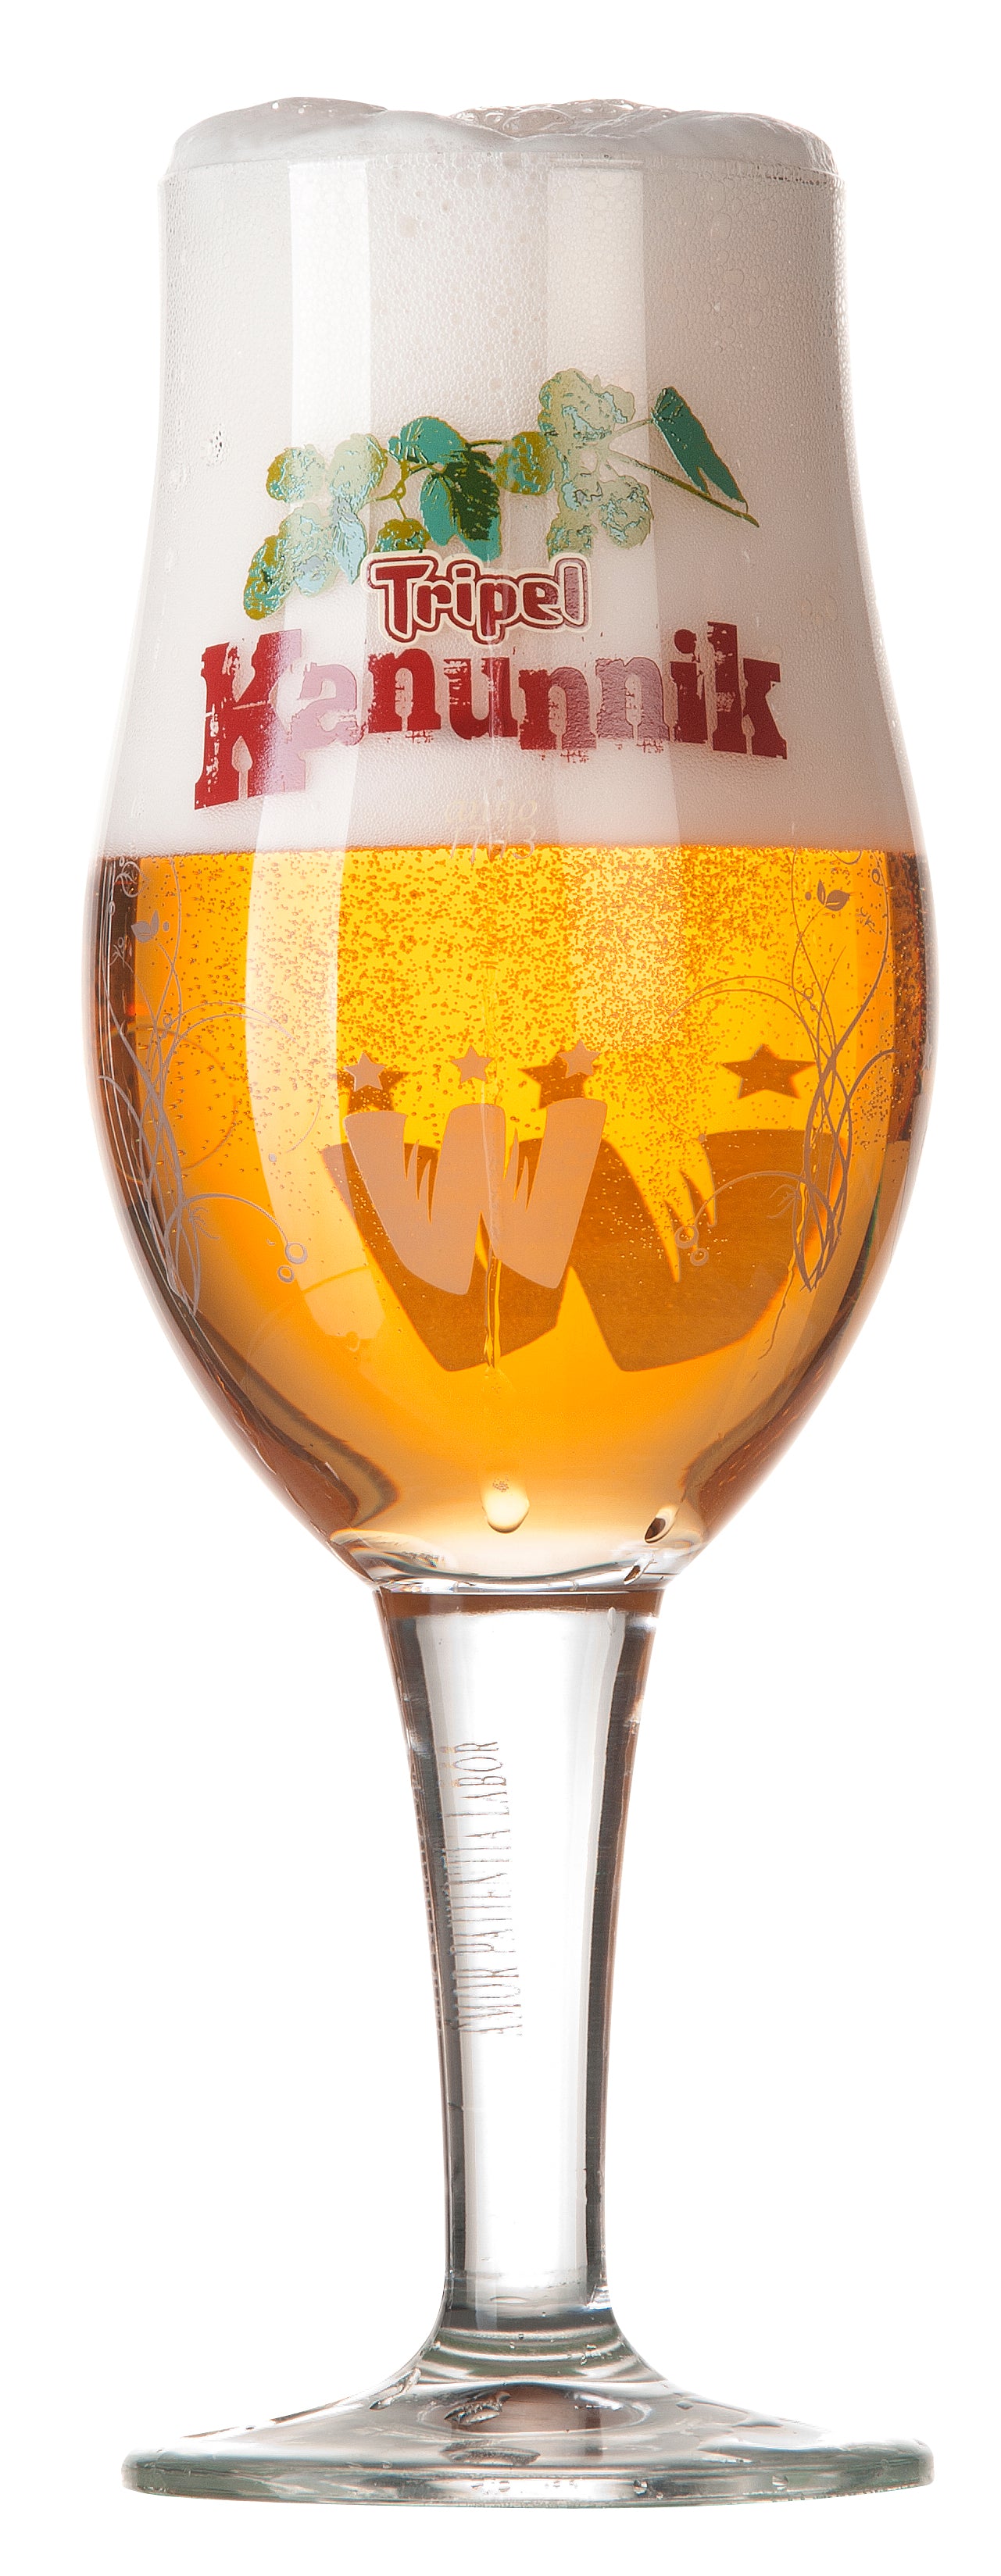 astronaut Anzai Diversiteit Tripel Kanunnik Glass 33cl – Brewery & Distillery Wilderen